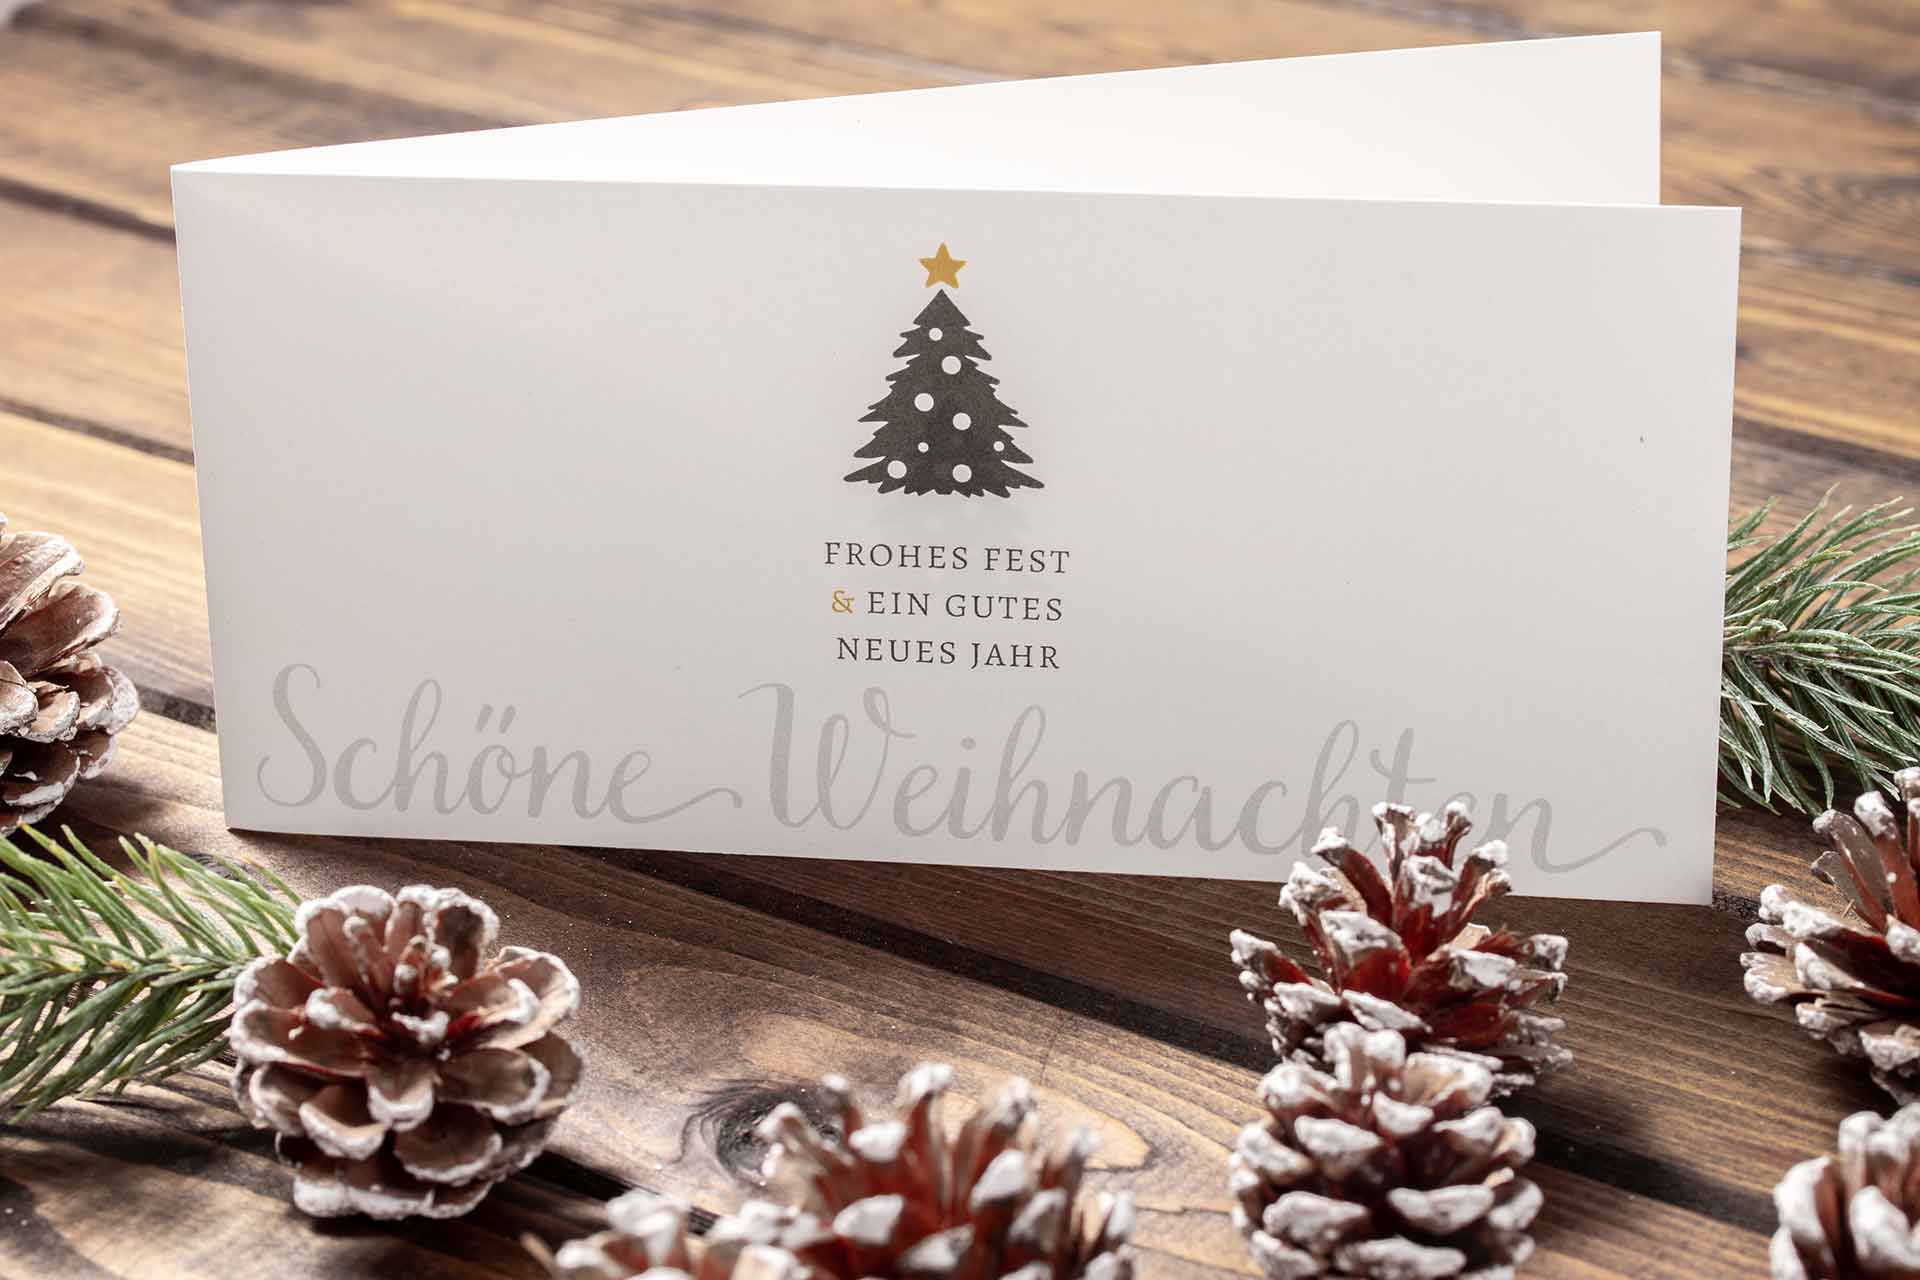 Geschäftliche Weihnachtskarte mit kleinem Weihnachtsbaum